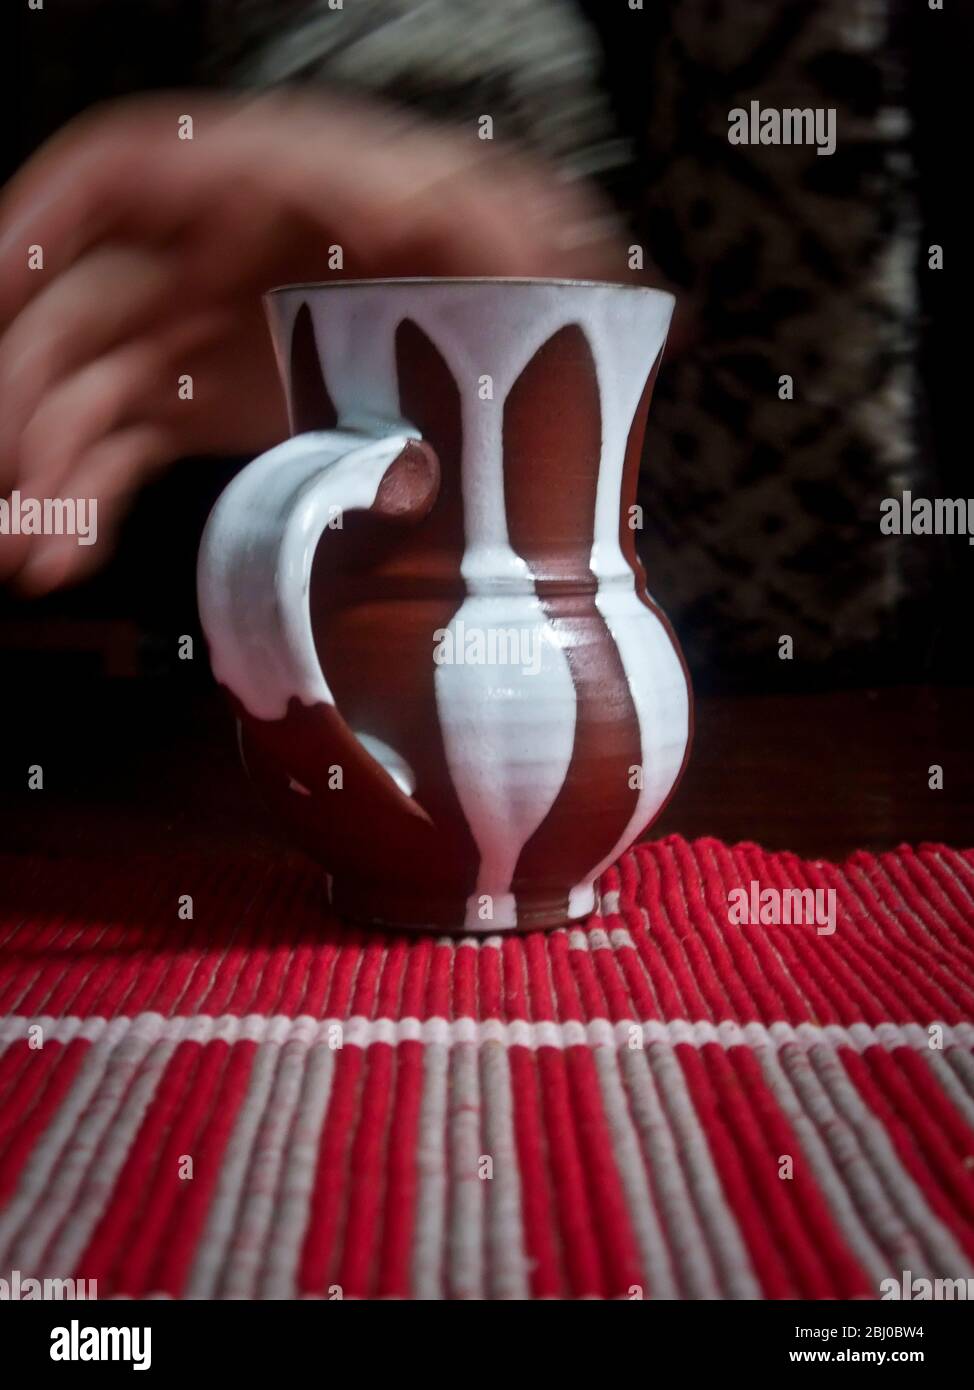 Eine Tasse Kaffee oder Tee in einem streifenbedeckten Töpferbecher auf einer gestreiften Tischdecke abholen - Stockfoto